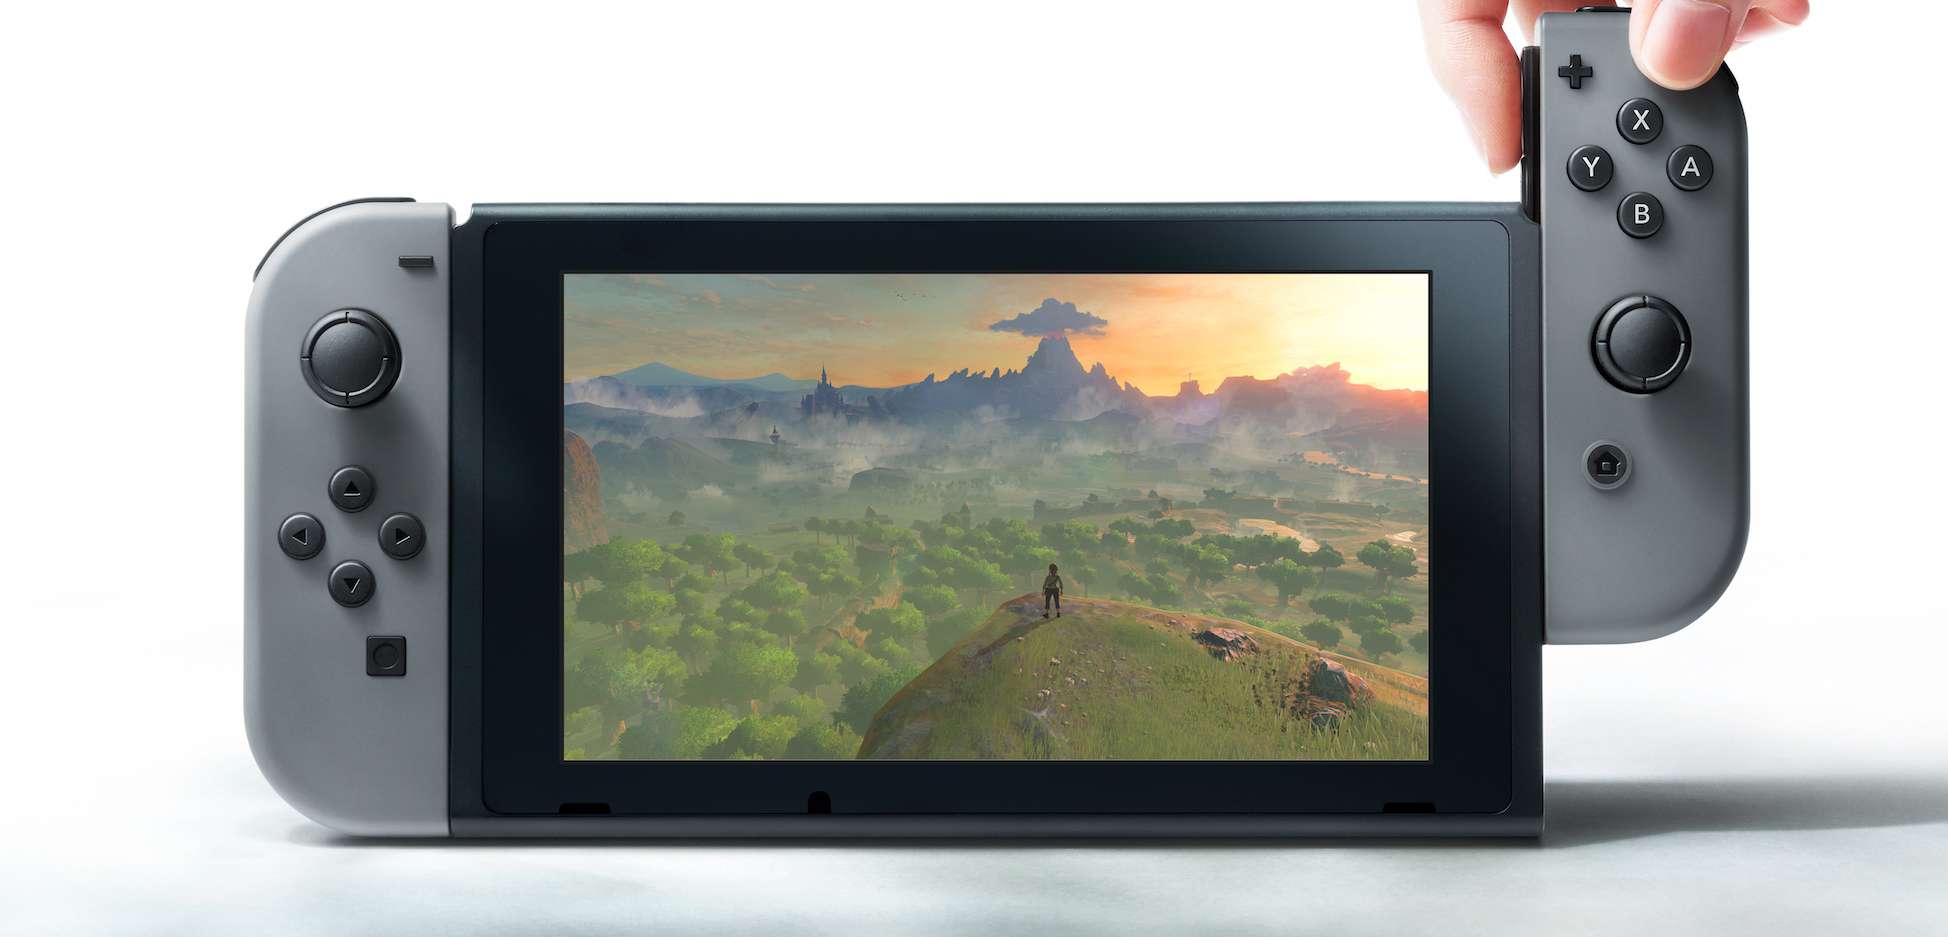 Blokada regionalna, kolejne gry? - nie liczcie na więcej informacji o Nintendo Switch do końca roku